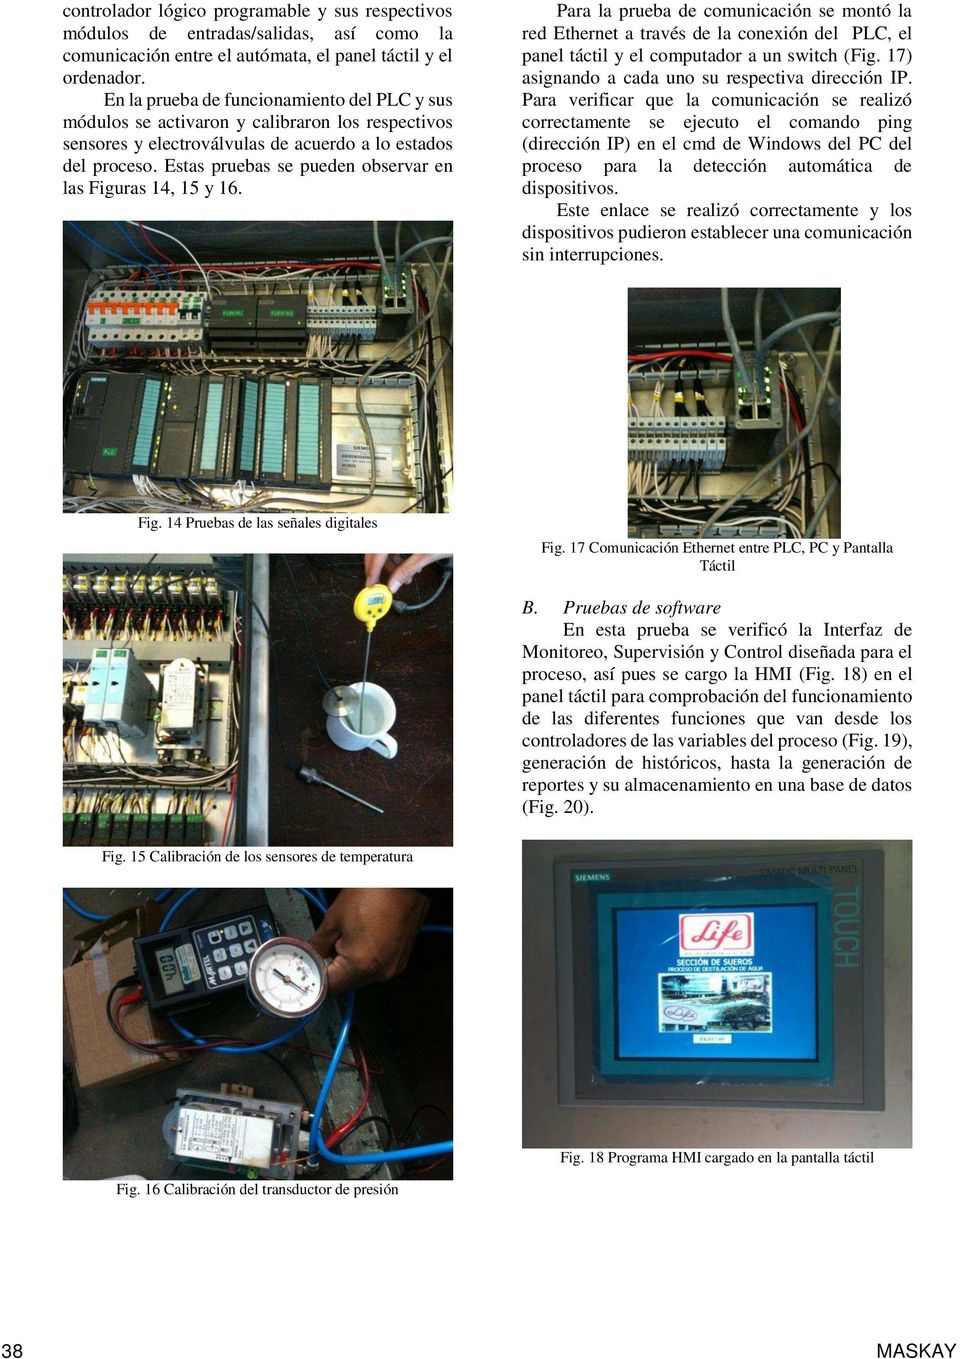 Estas pruebas se pueden observar en las Figuras 14, 15 y 16. Para la prueba de comunicación se montó la red Ethernet a través de la conexión del PLC, el panel táctil y el computador a un switch (Fig.